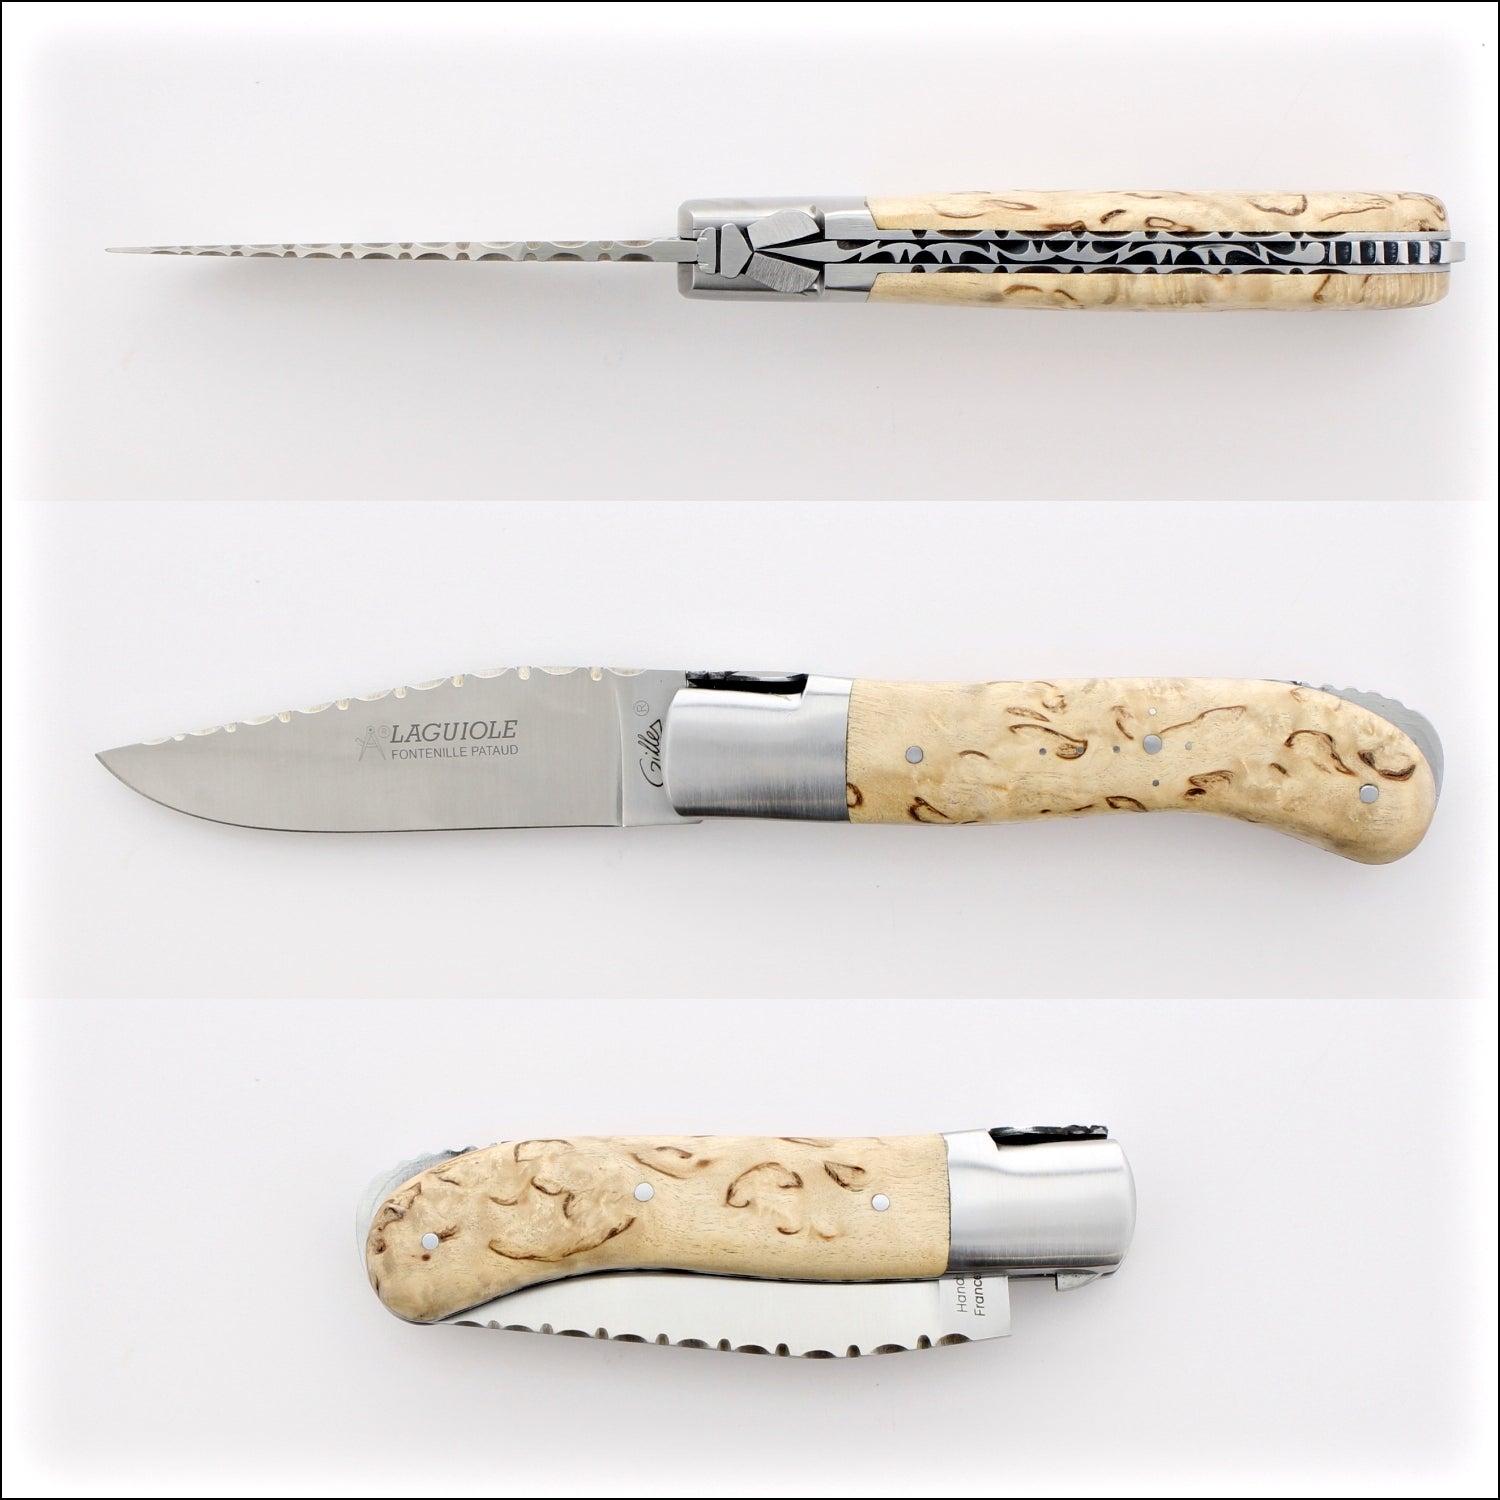 Laguiole Gentleman's Knife Guilloche - Karelian Birch